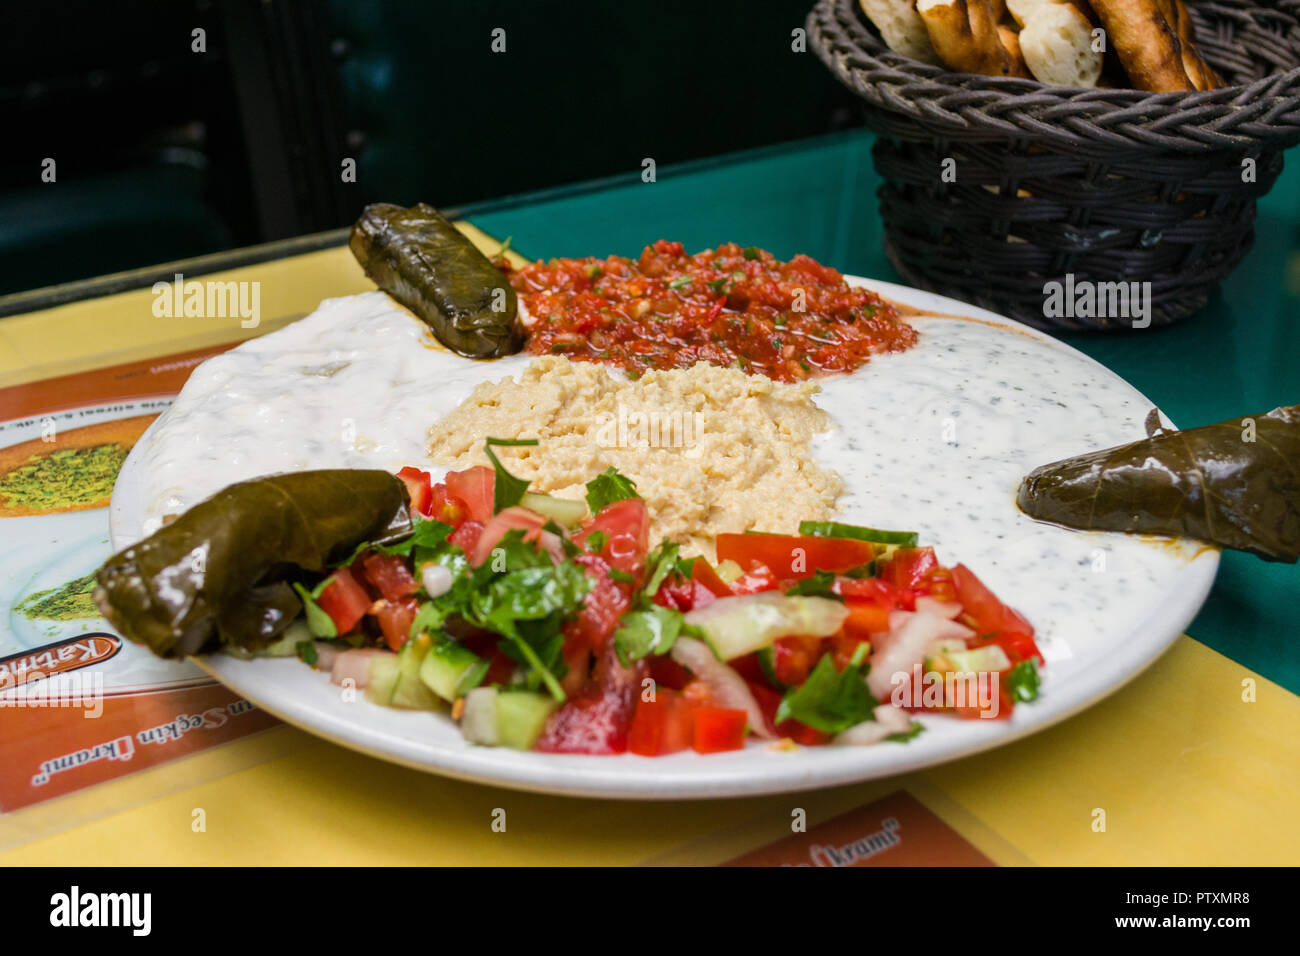 Gefüllte Weinblätter oder sarma serviert auf einem Teller mit Joghurt und Salat, Istanbul, Türkei Stockfoto